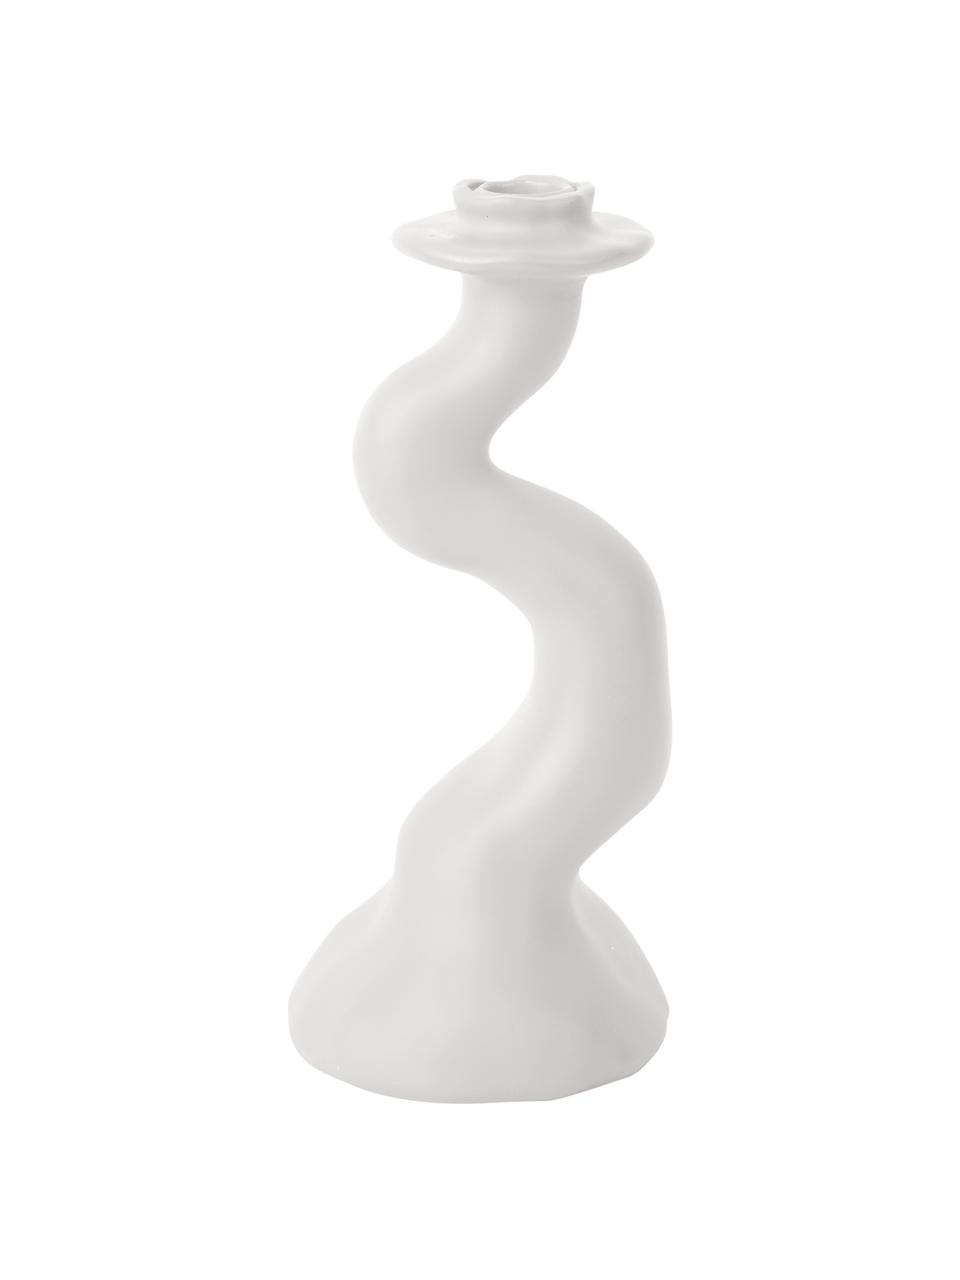 Świecznik Organic Swirl, Poliresing, Biały, Ø 11 x W 25 cm